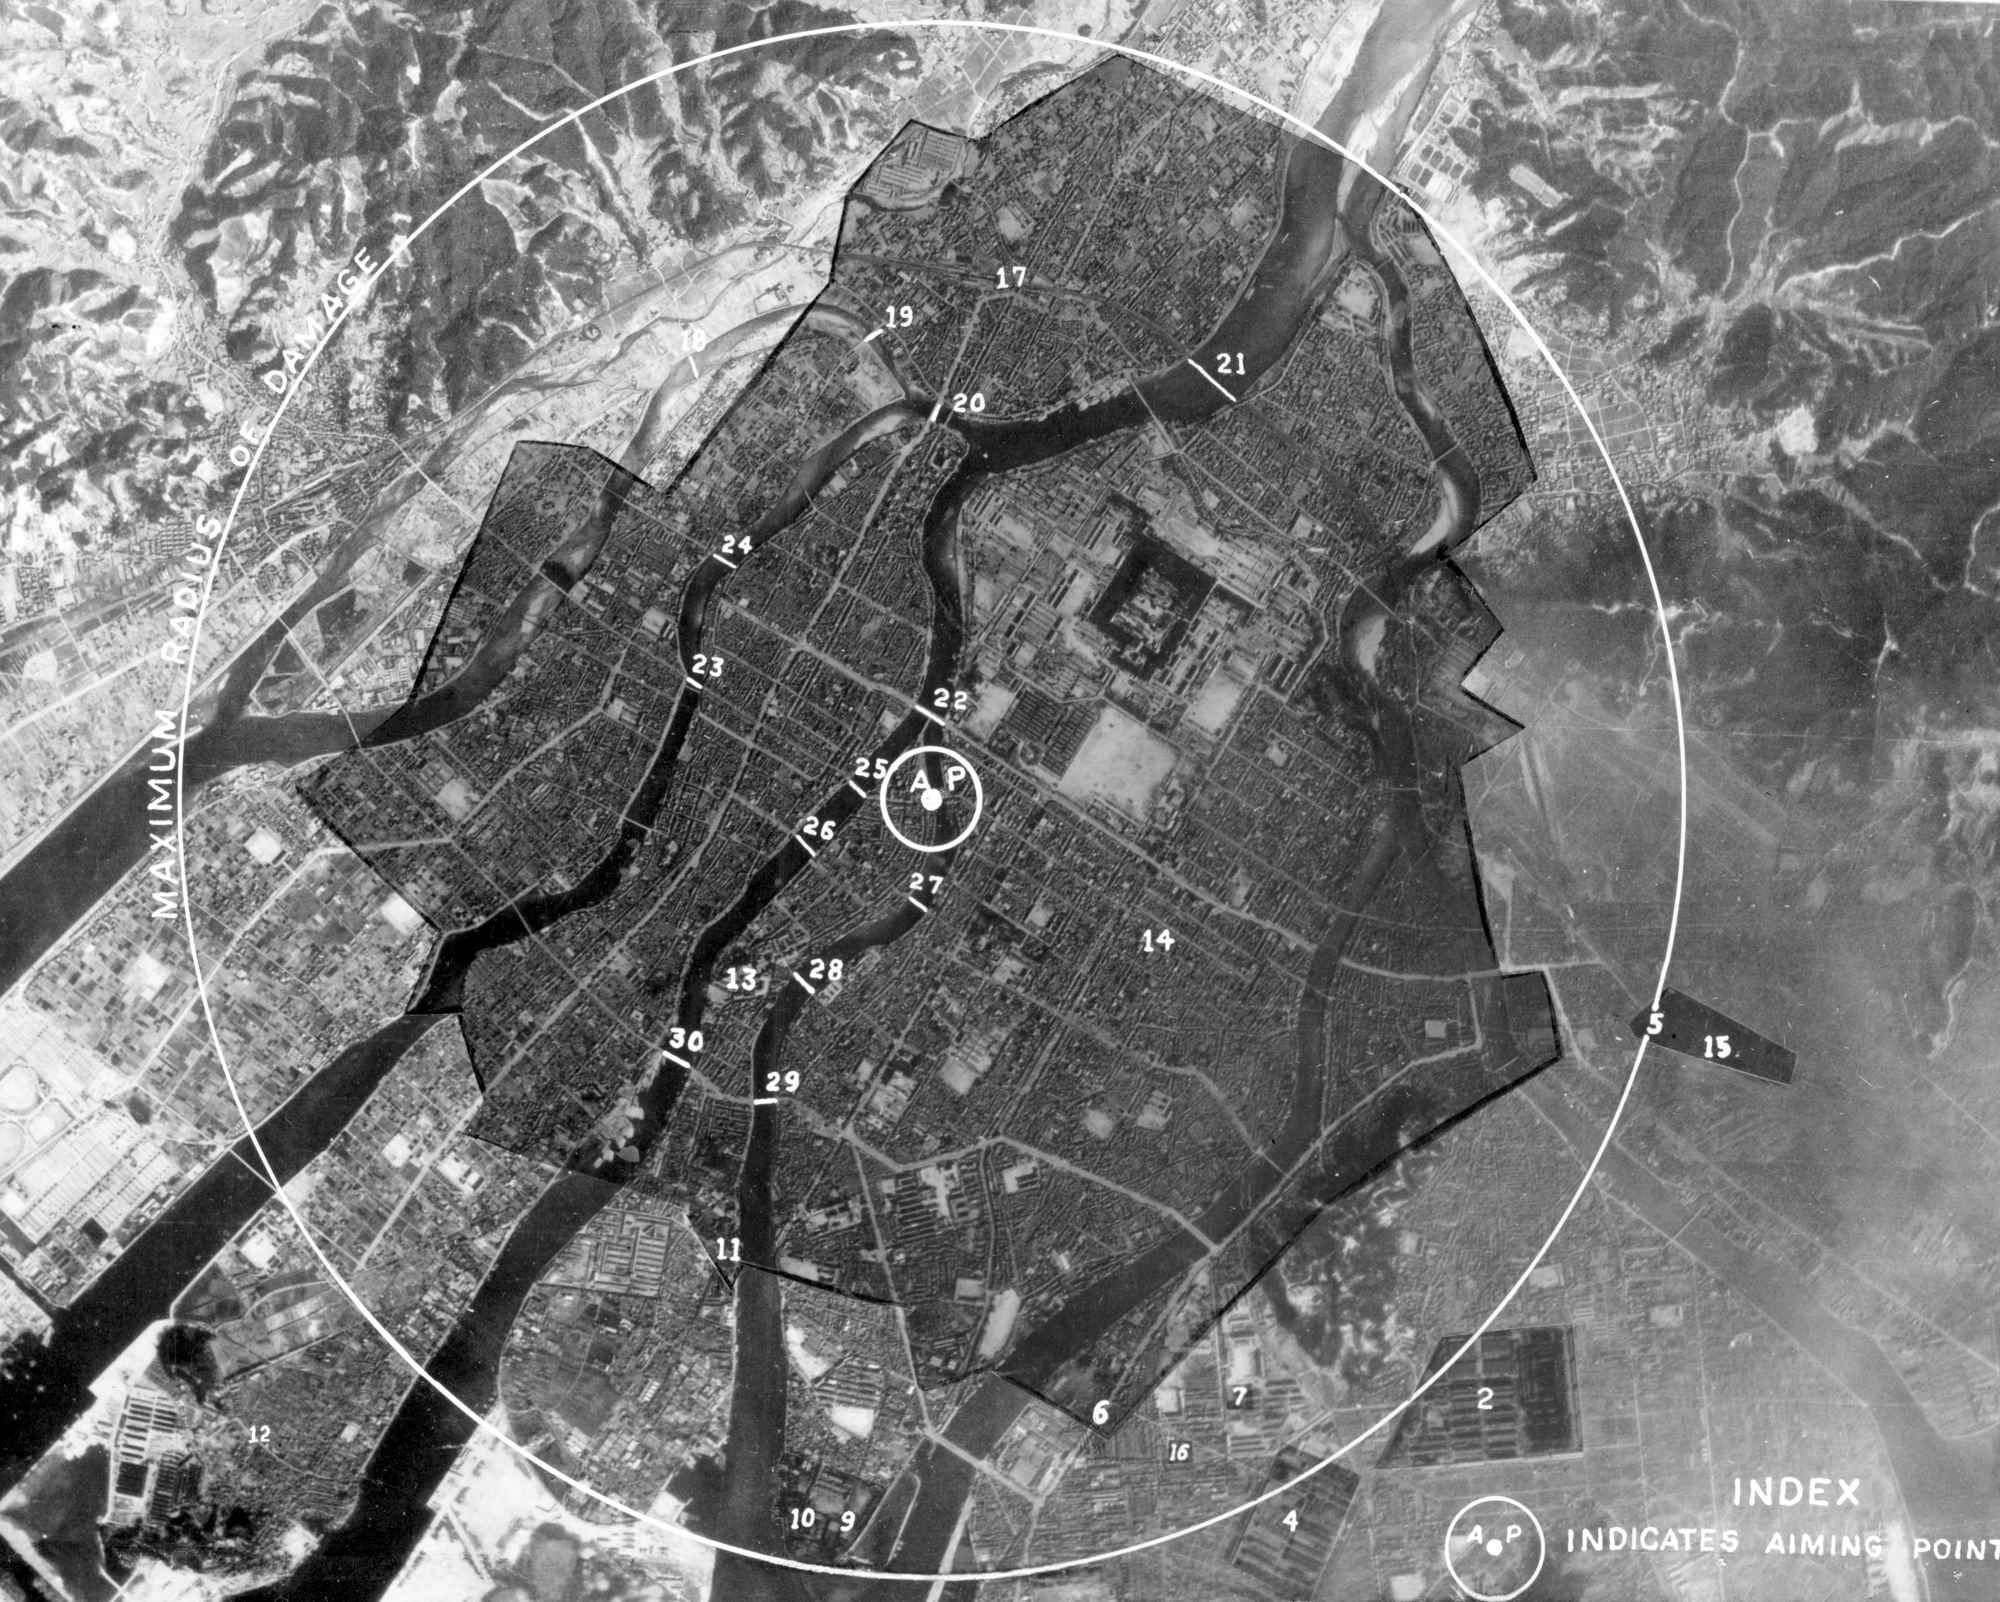 被爆後の広島の航空写真。円内の色の濃い部分は原爆で完全に破壊された所を示す。
            軍事施設と工業施設には番号が振られ、それぞれの破壊の程度が記されている＝1945年8月、米陸軍航空隊情報部撮影（ACME）